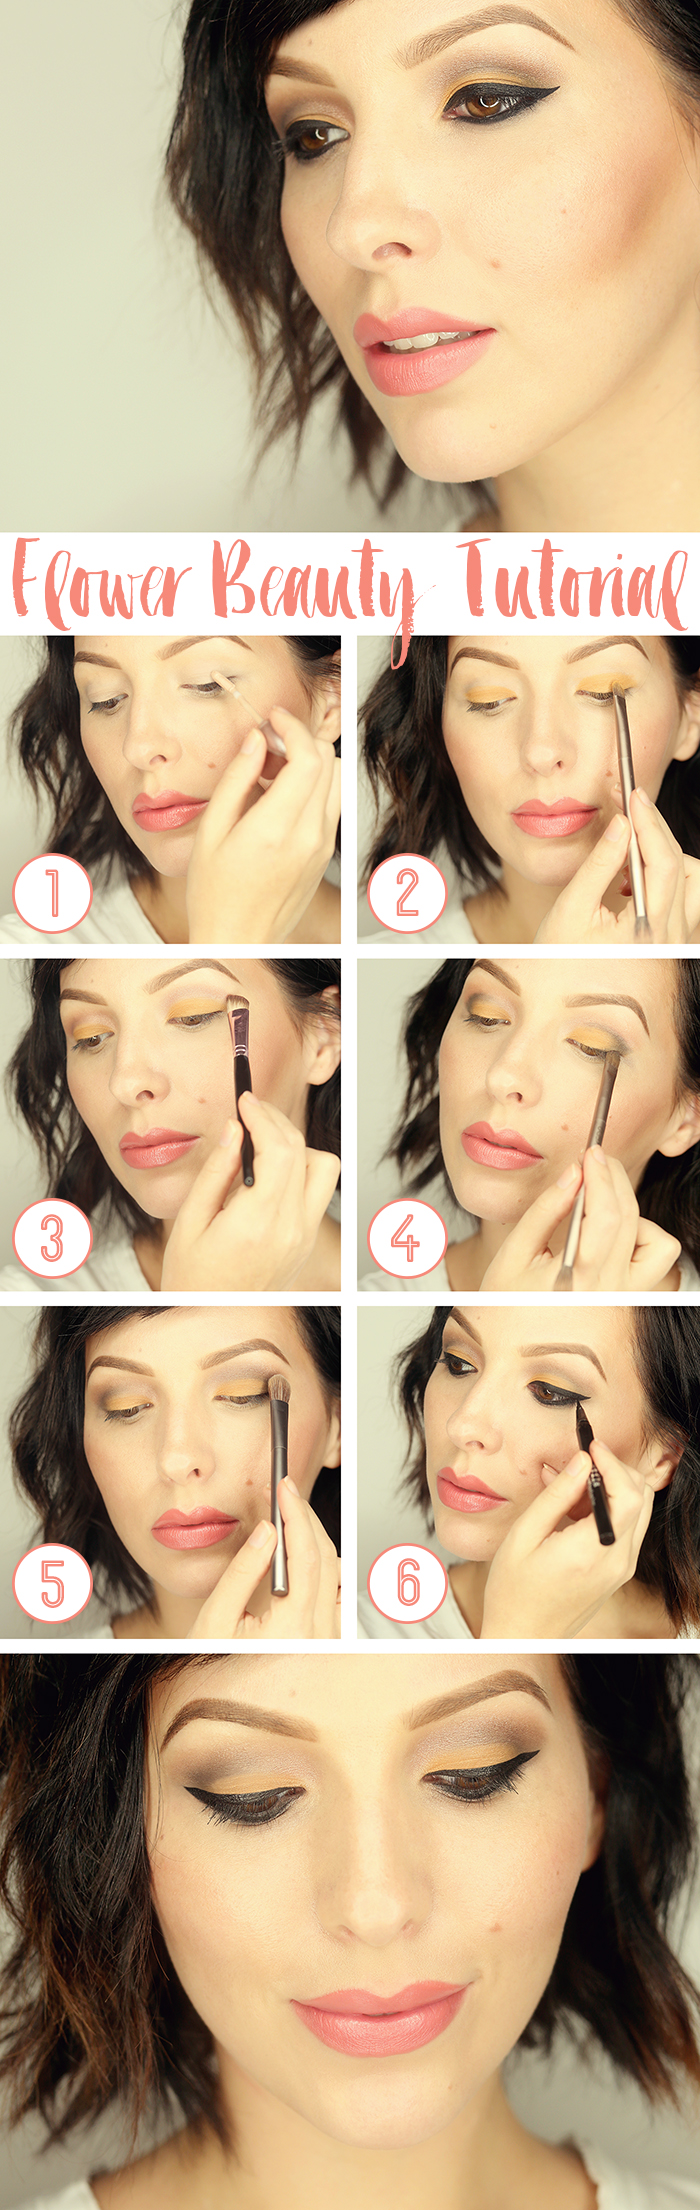 flower beauty makeup tutorial